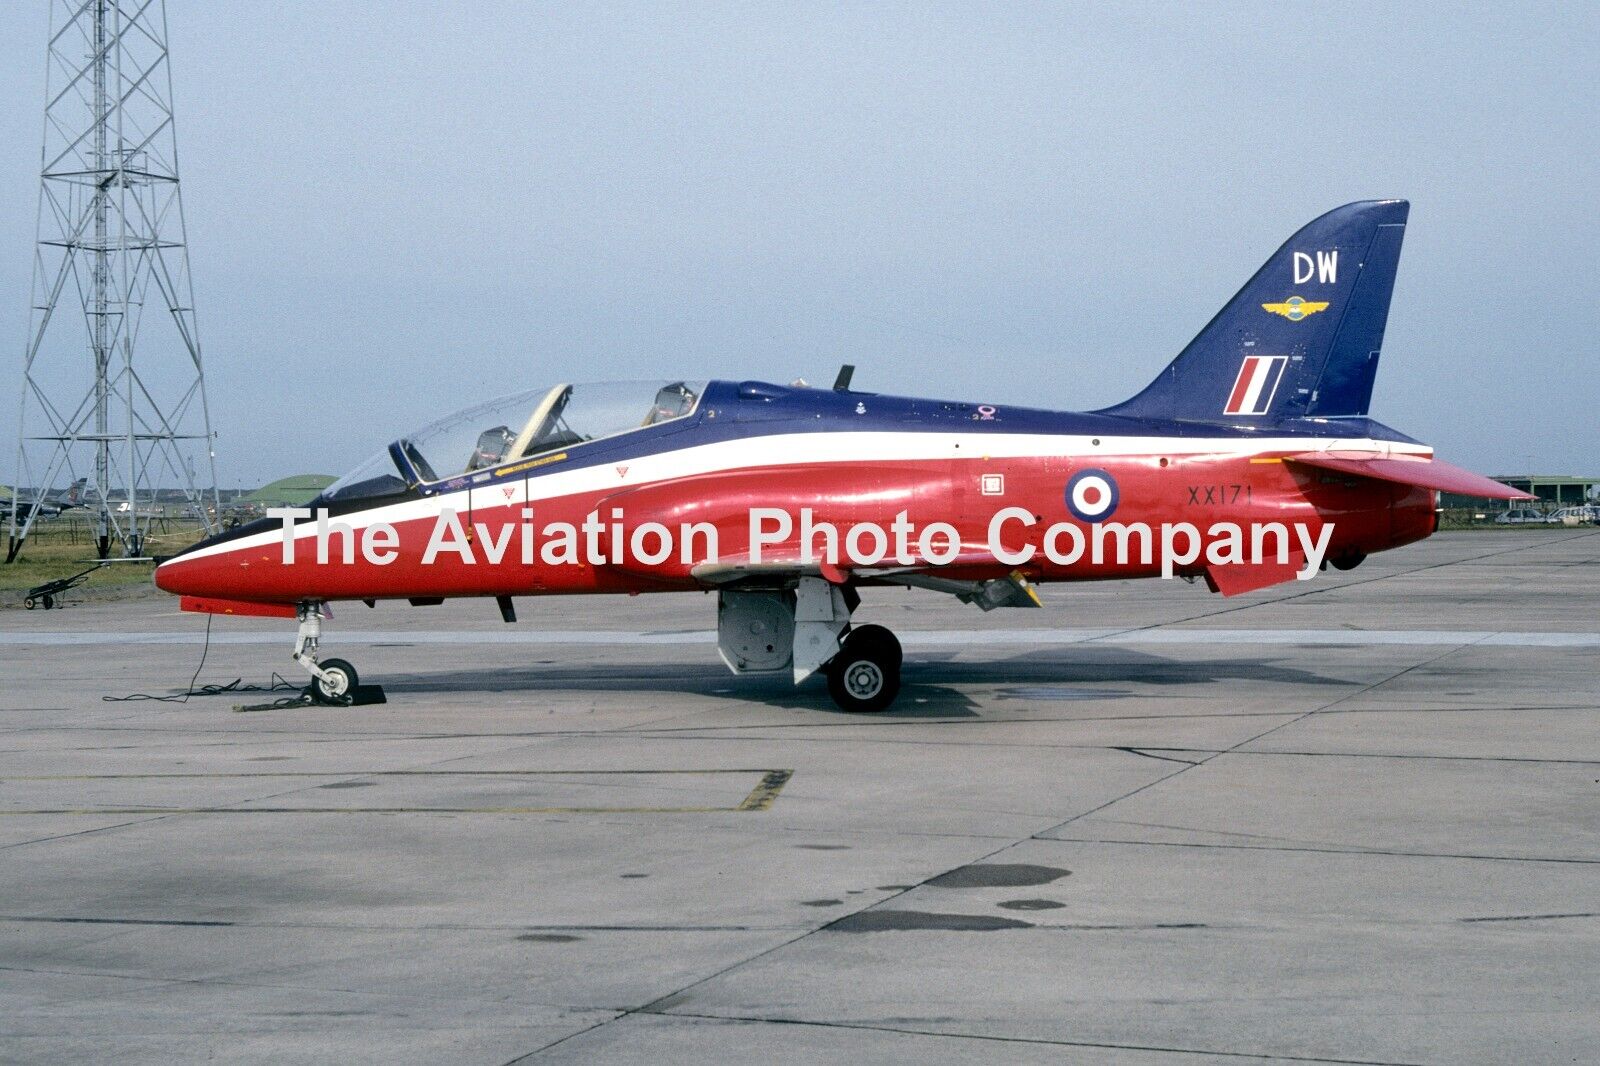 RAF 208 Squadron Hawker Siddeley Hawk T.1 XX171/DW (1994) Photograph